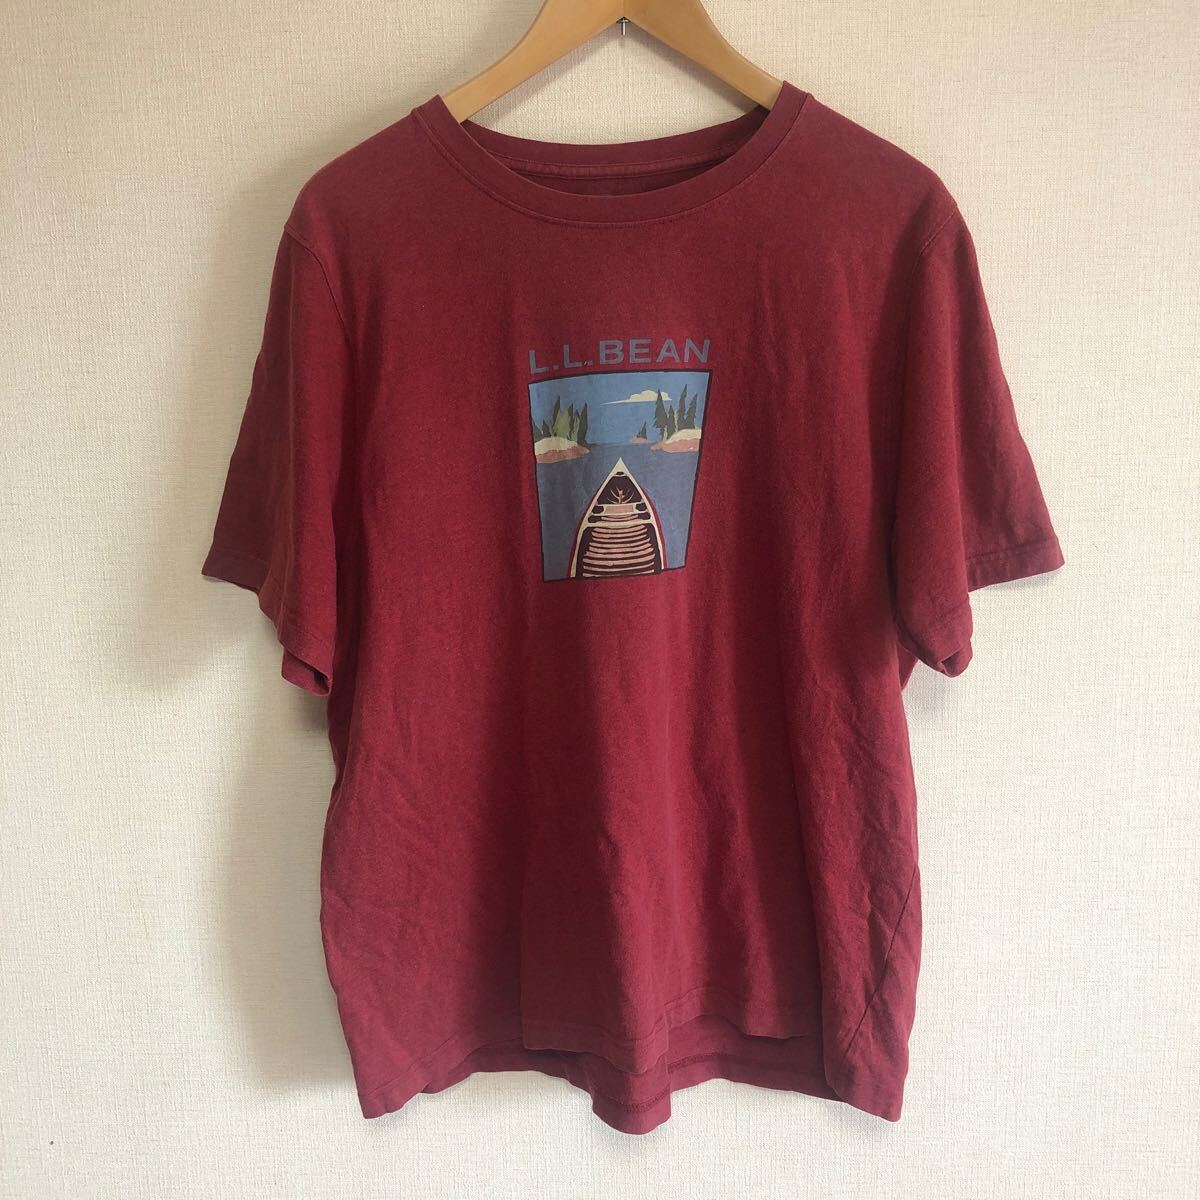  L.L.Bean エルエルビーン ロゴ Tシャツ えんじ系 アウトドア アメカジ サイズXLの画像1